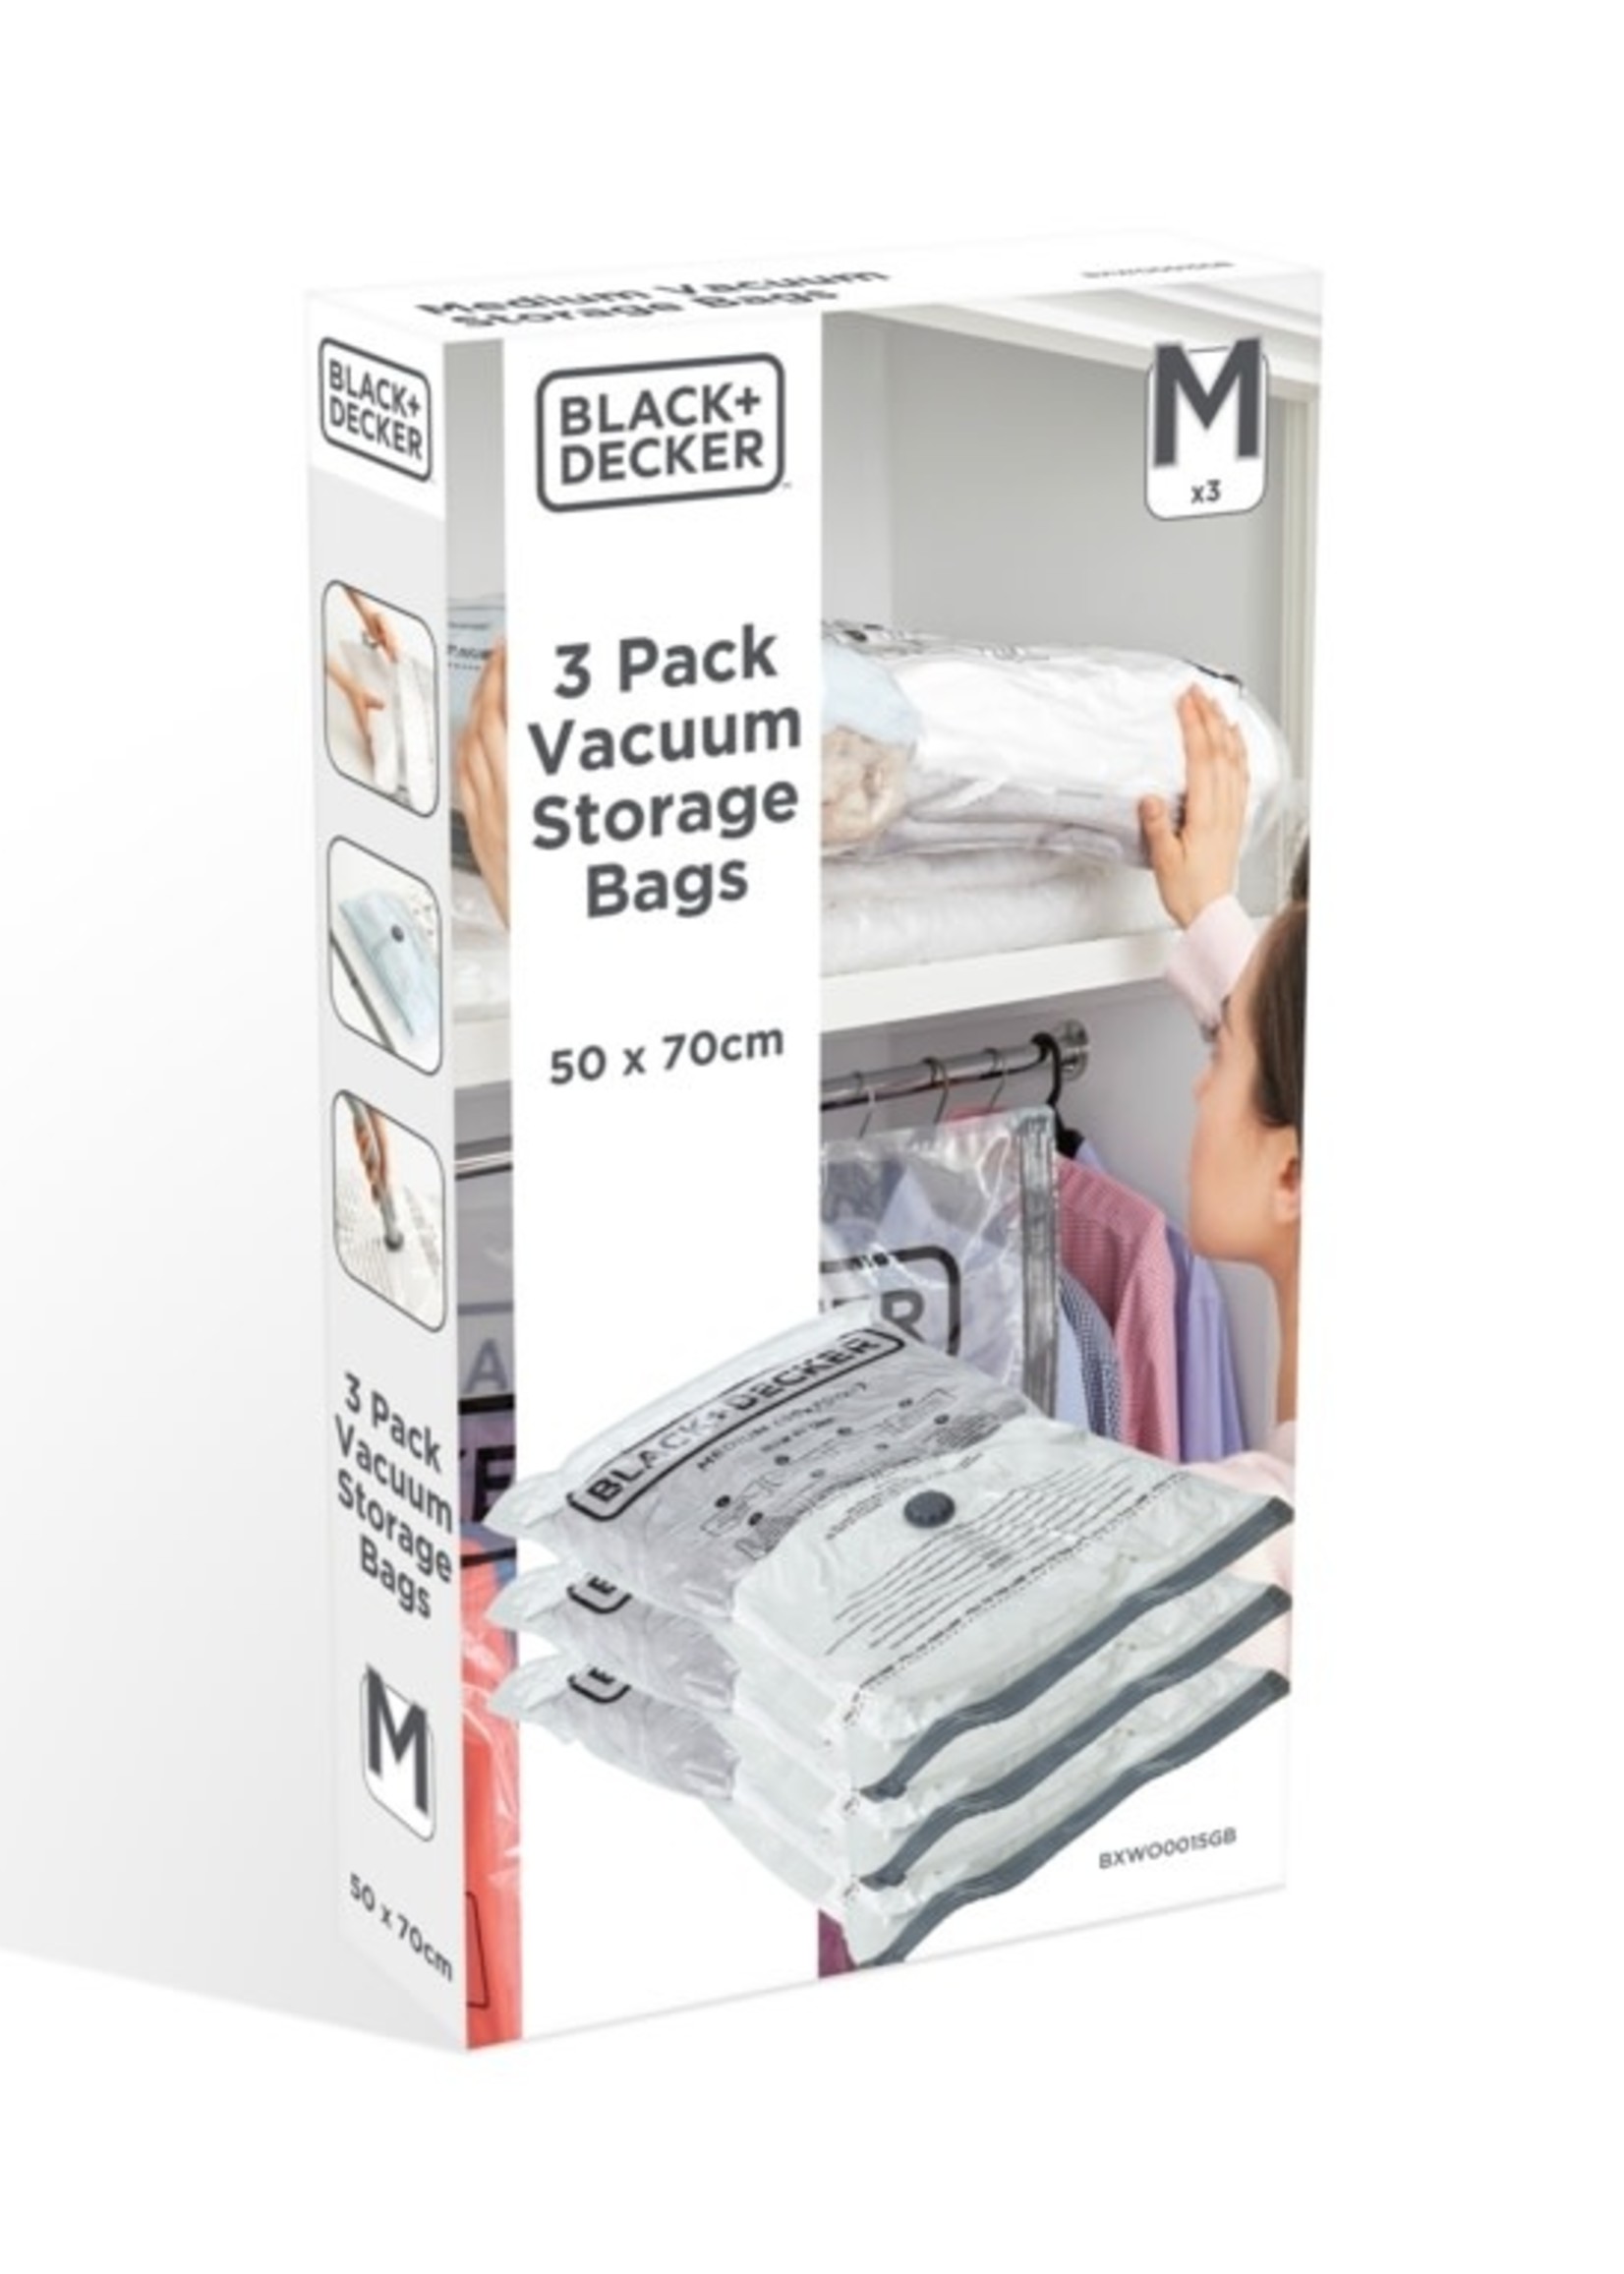 Black & Decker Black & Decker Vacuum Storage Bags Medium 3 Pack